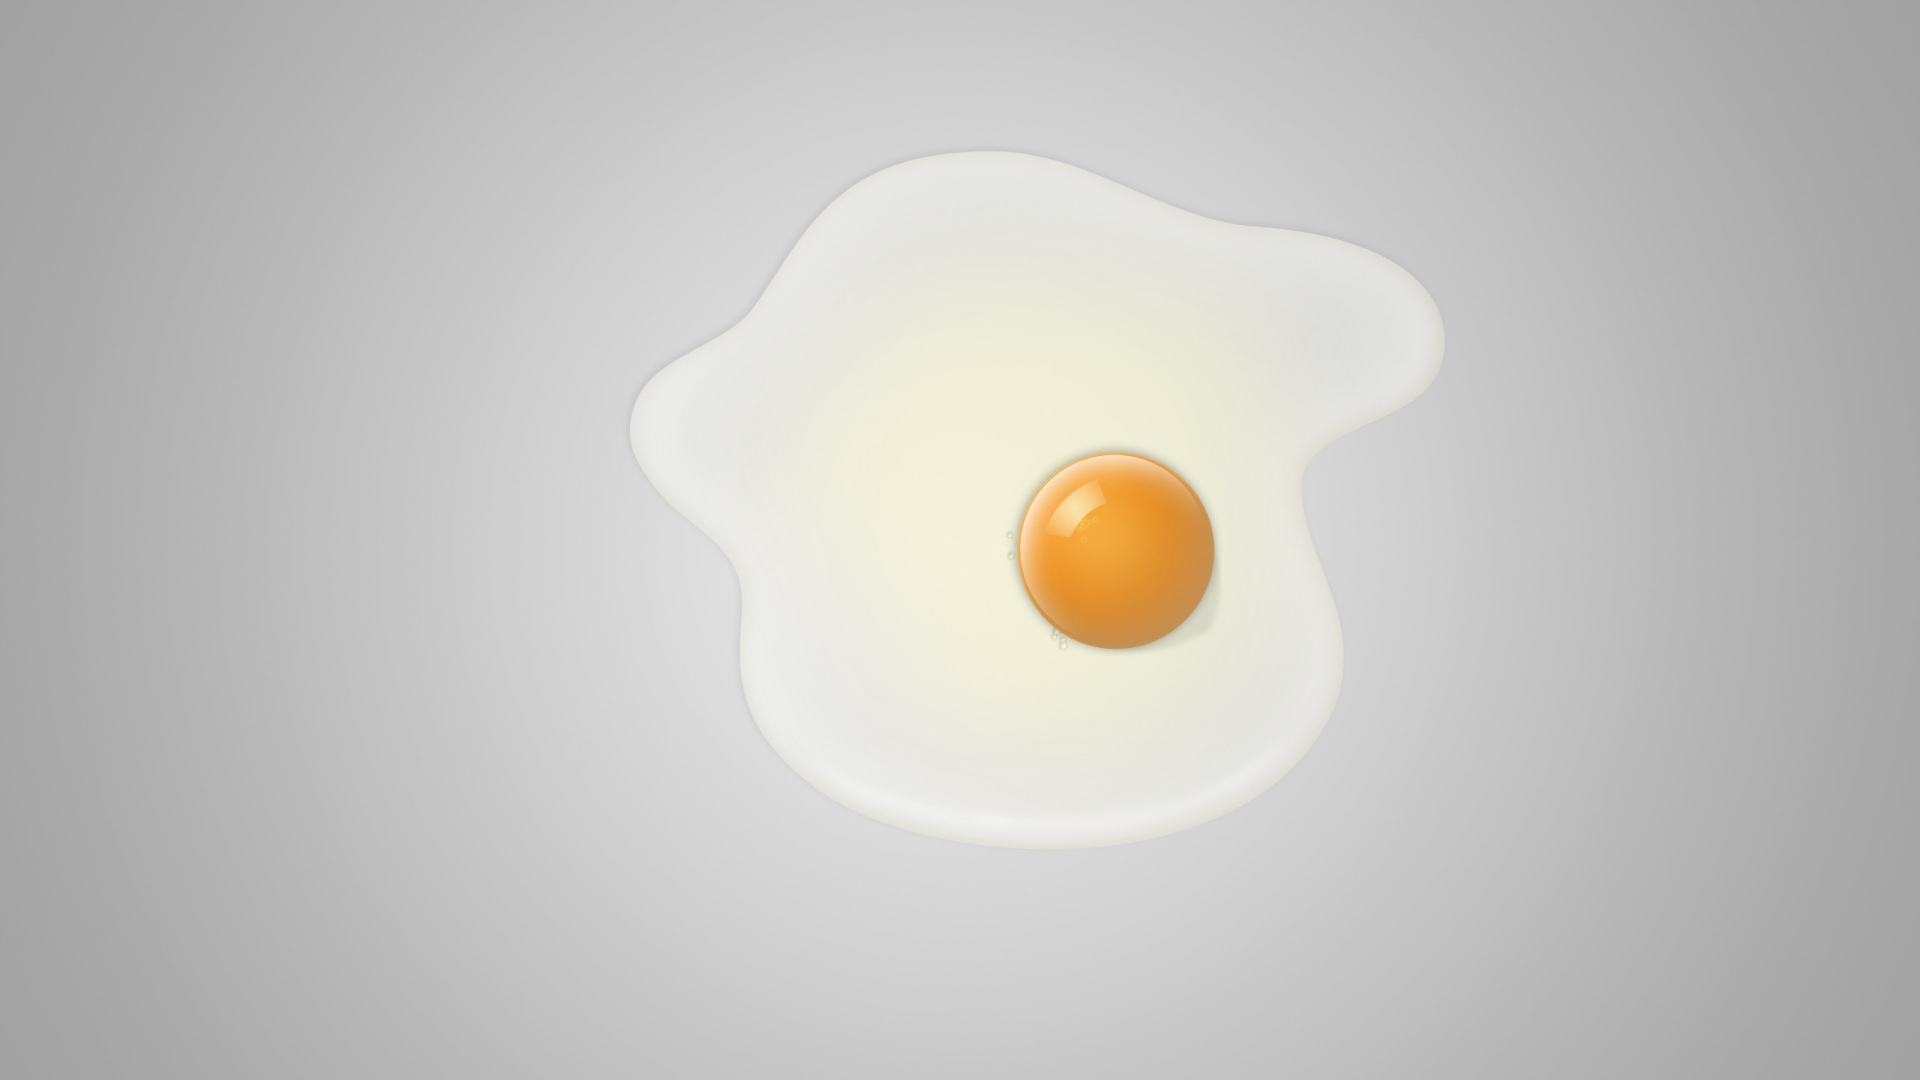 Minimal fried egg for 1920 x 1080 HDTV 1080p resolution